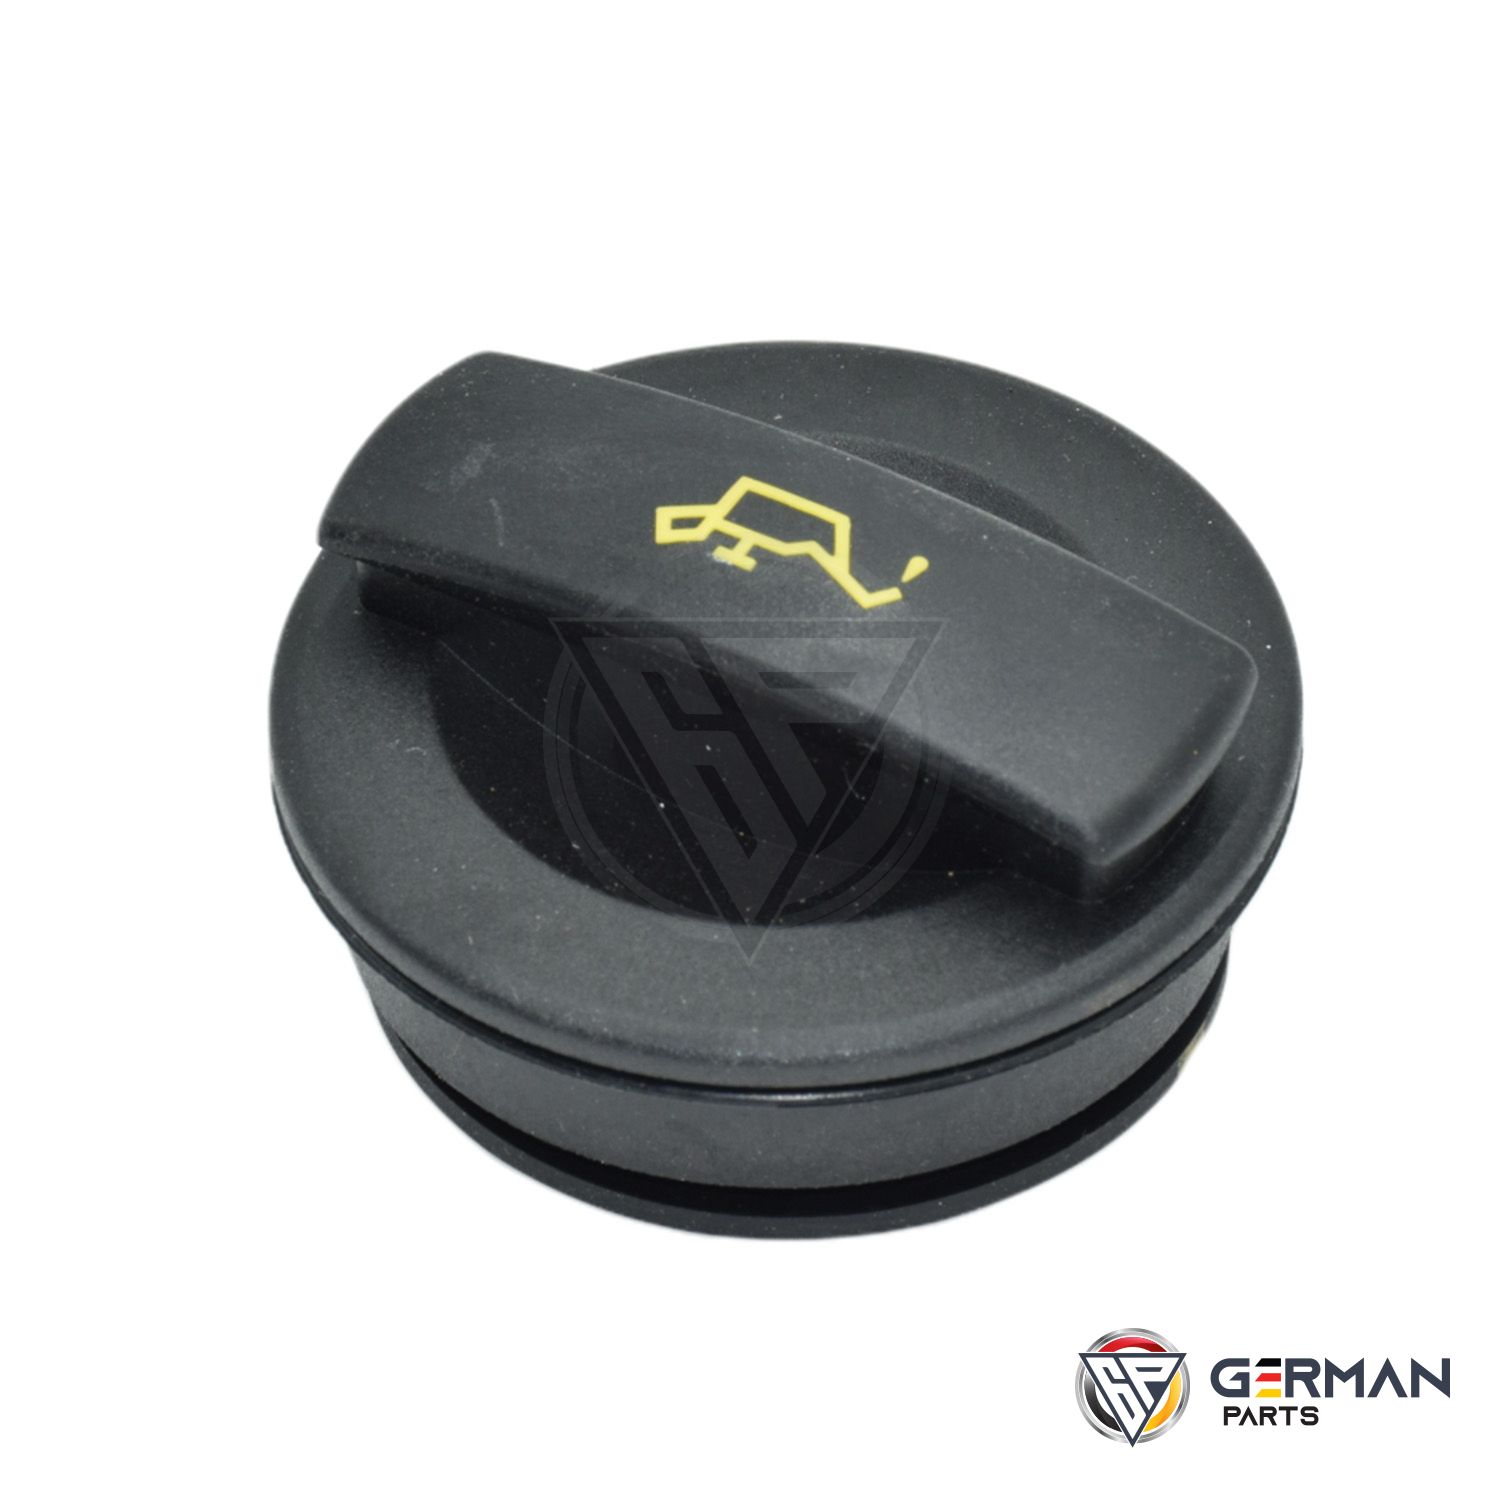 Buy Audi Volkswagen Oil Cap 06C103485P - German Parts